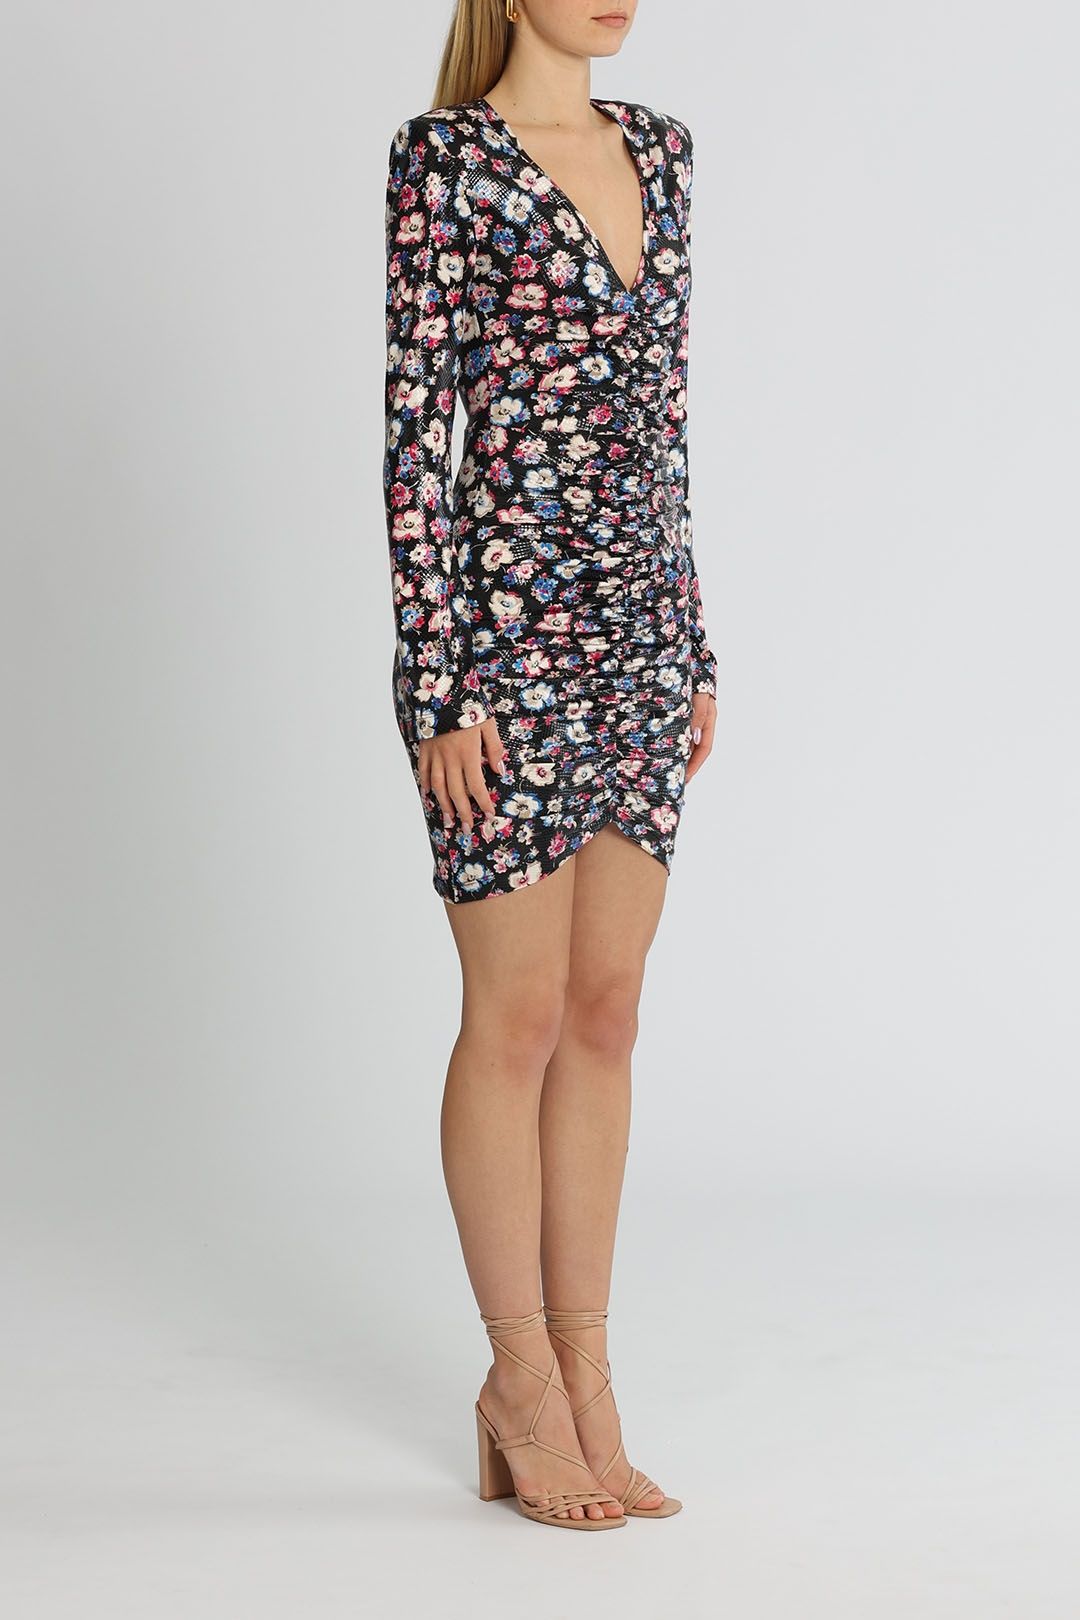 Sierra Short Dress in Floral Mini